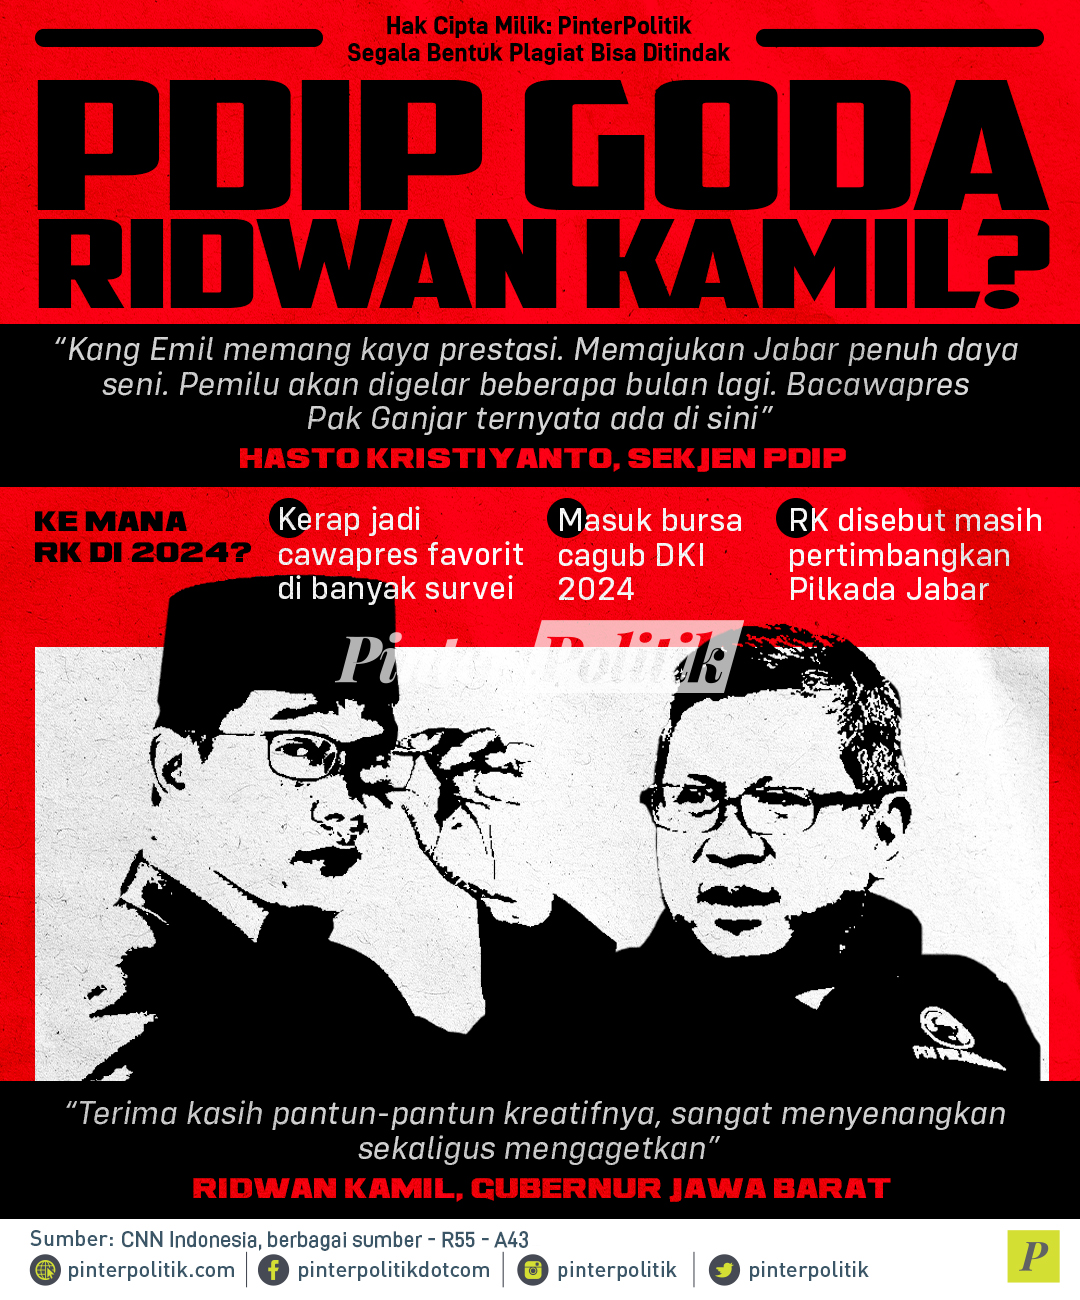 PDIP Goda Ridwan Kamil